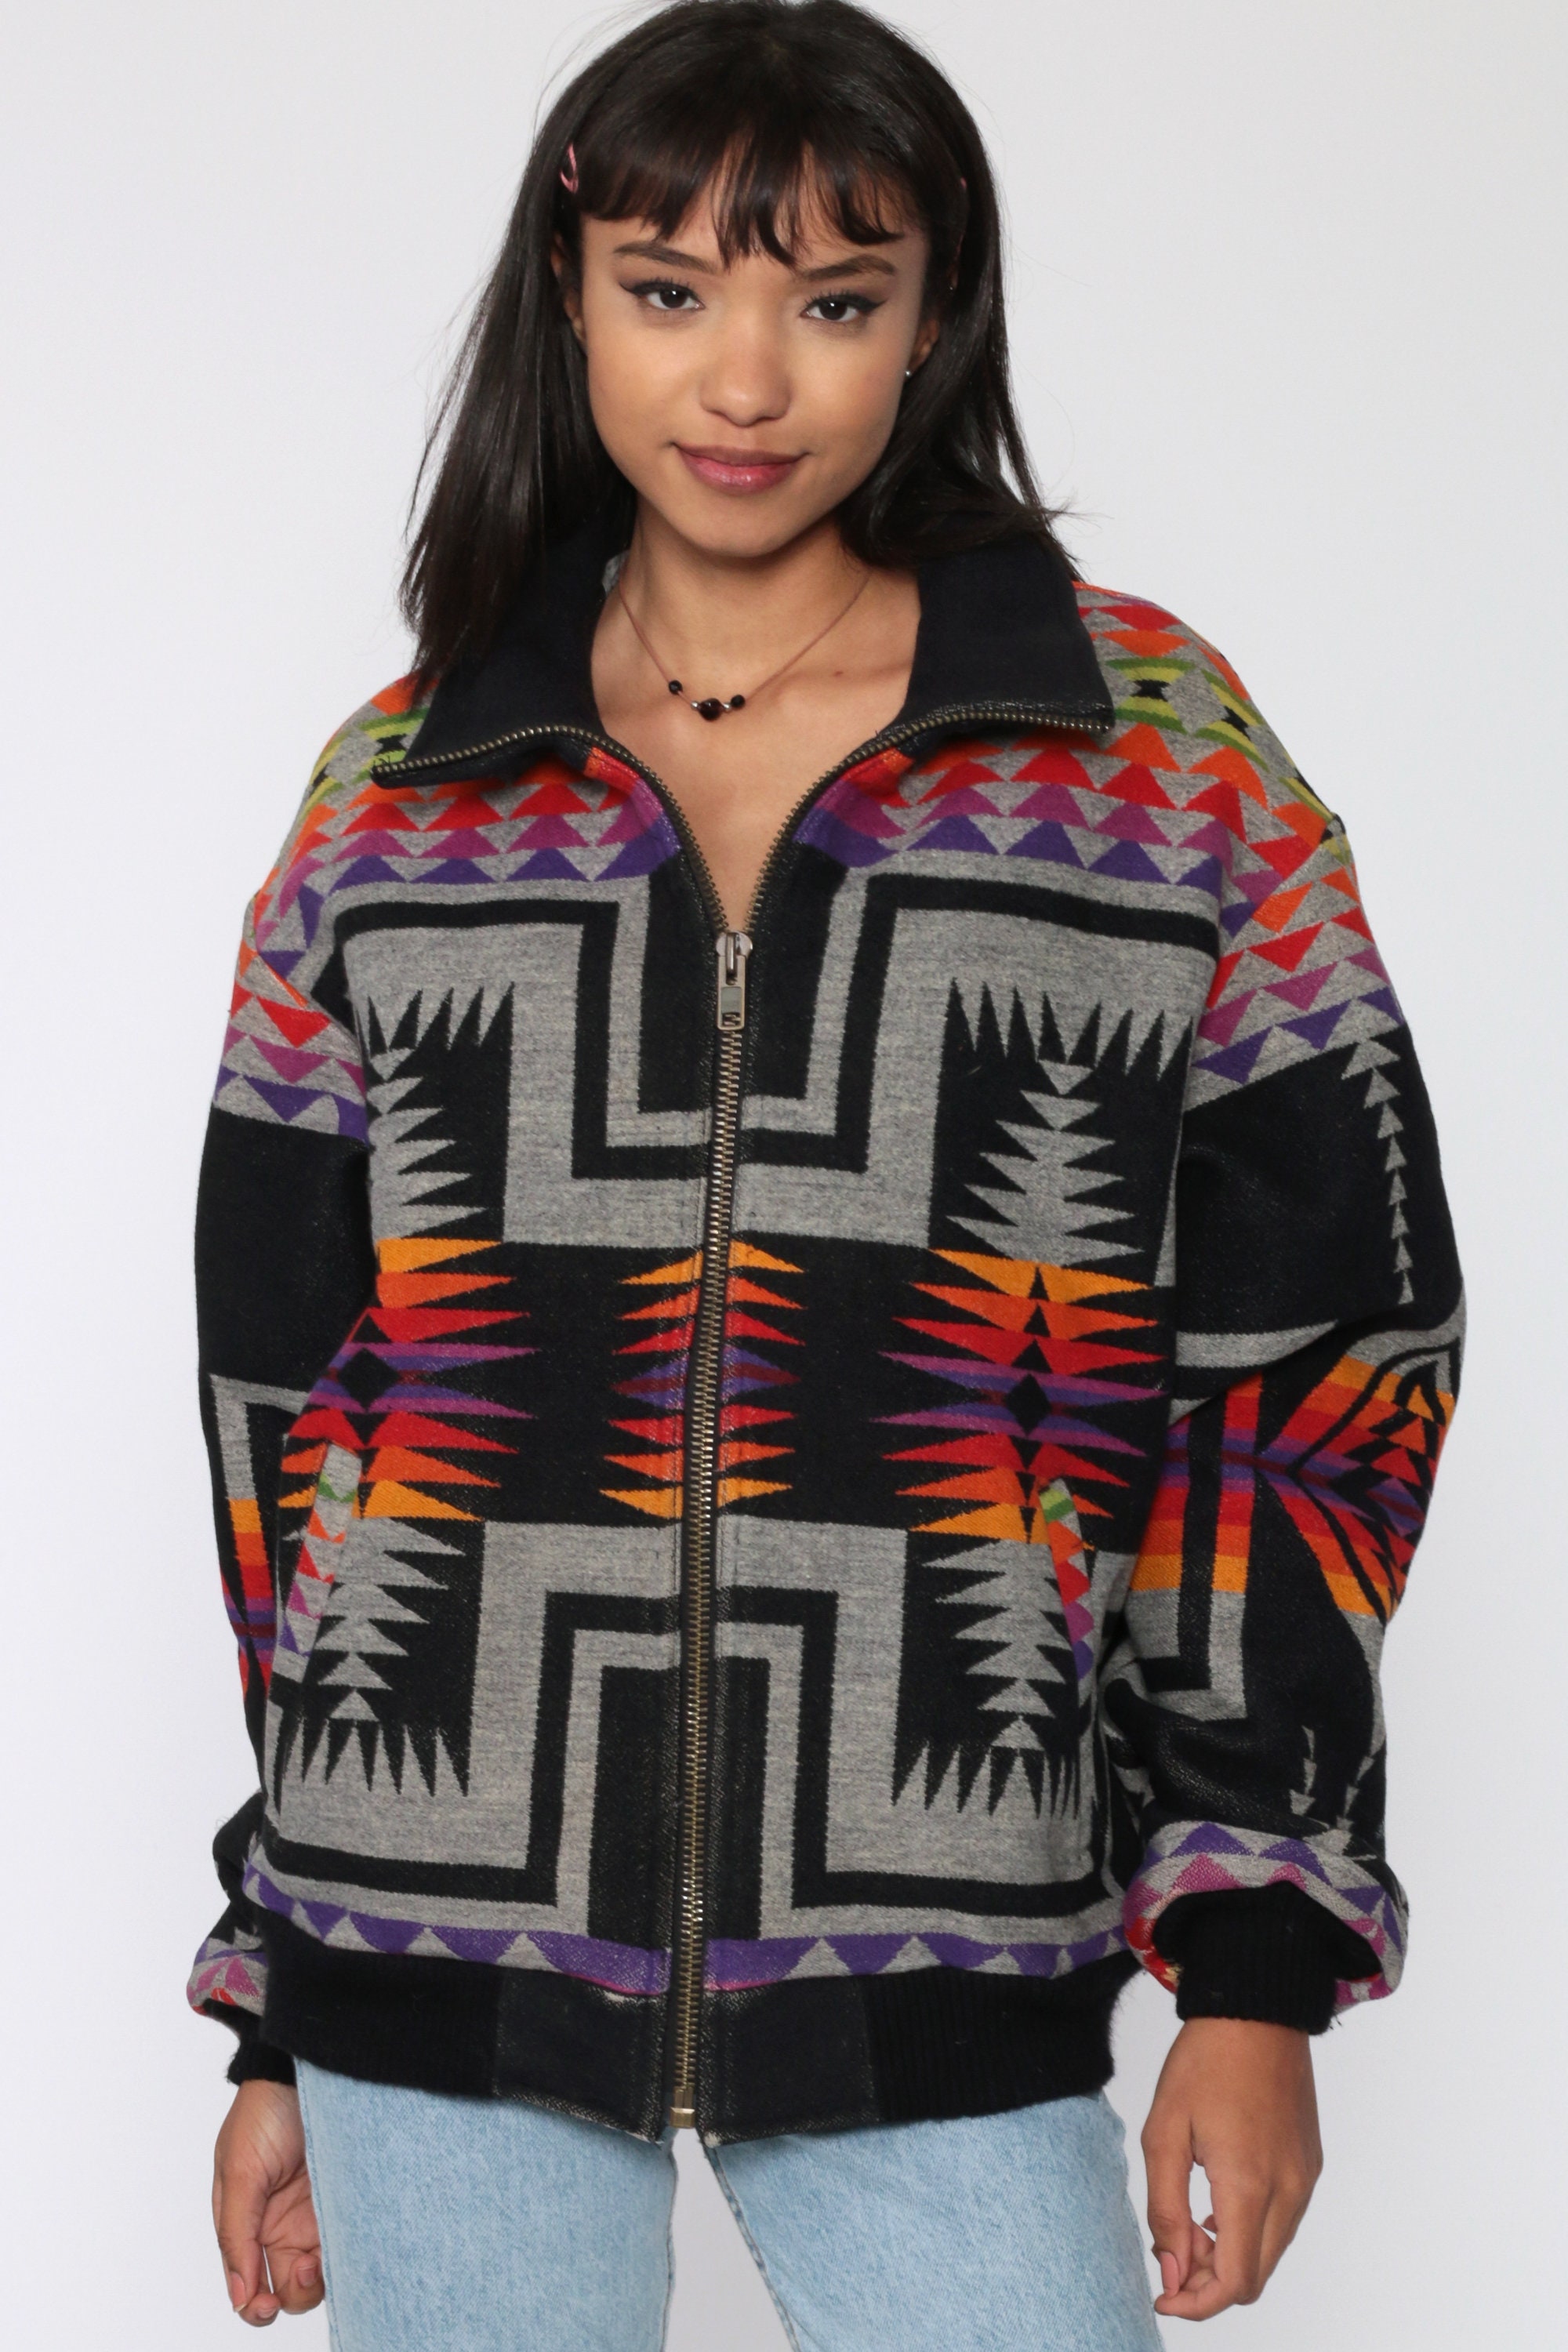 WOOL Blanket Coat PENDLETON Jacket Southwest Jacket Aztec Print Boho